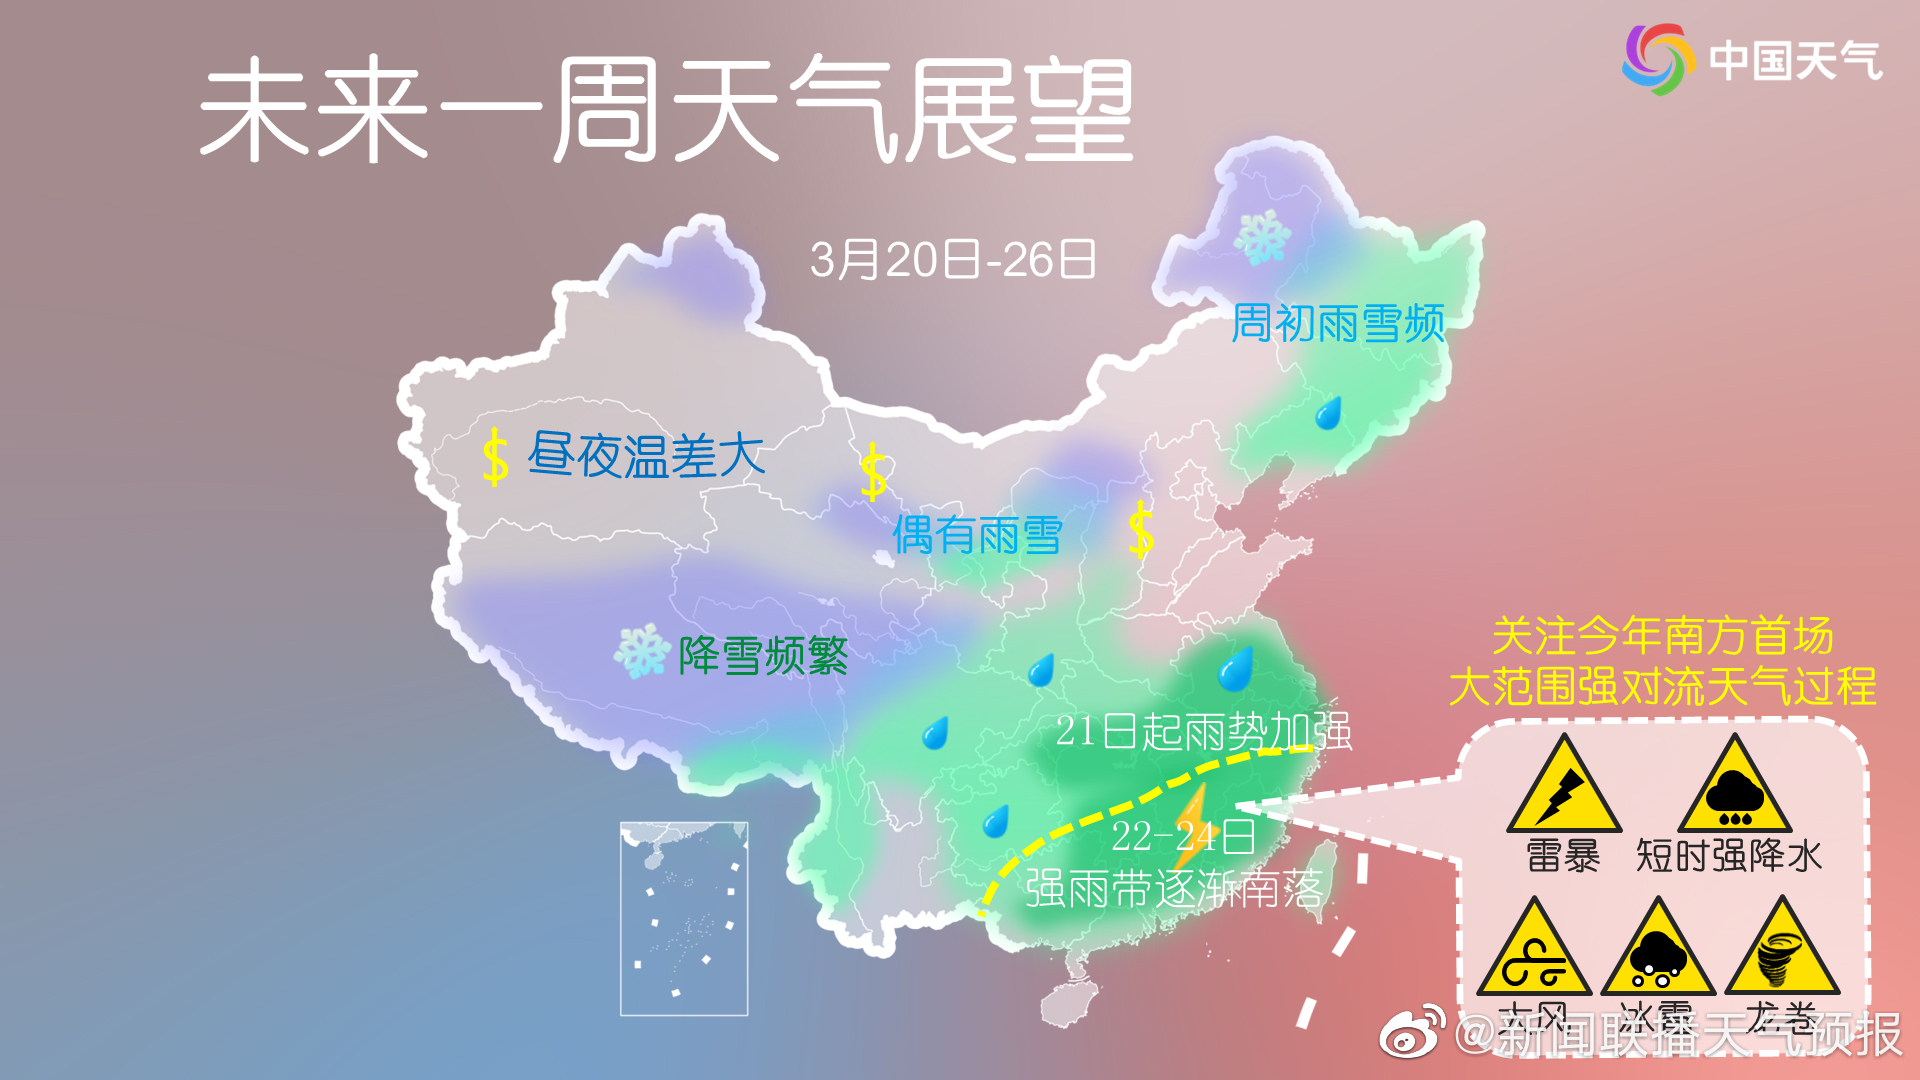 台风“梅花”将登陆浙江北部沿海地区 华东东部将有强降雨 - 国内动态 - 华声新闻 - 华声在线